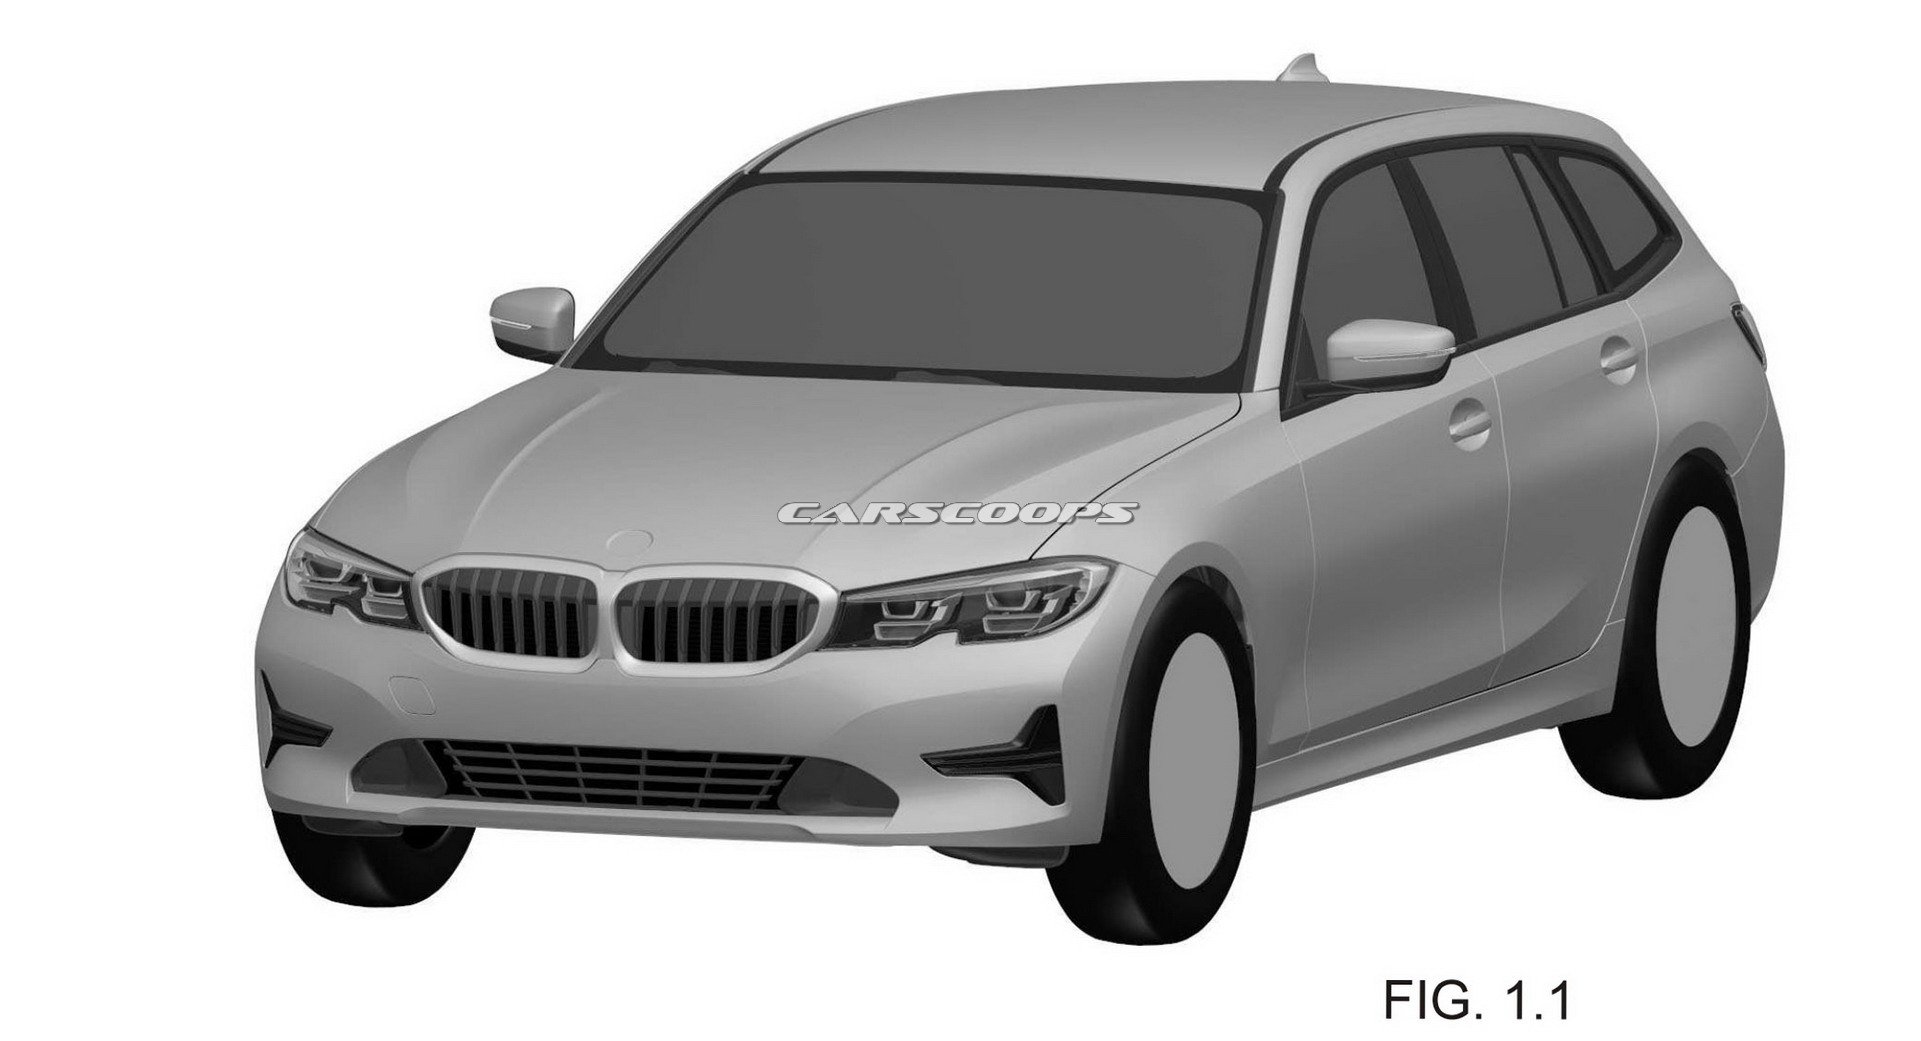 Berita, paten BMW 3-Series Touring 2019 depan: Paten BMW 3-Series Touring 2019 Bocor Ke Publik, Cakep?